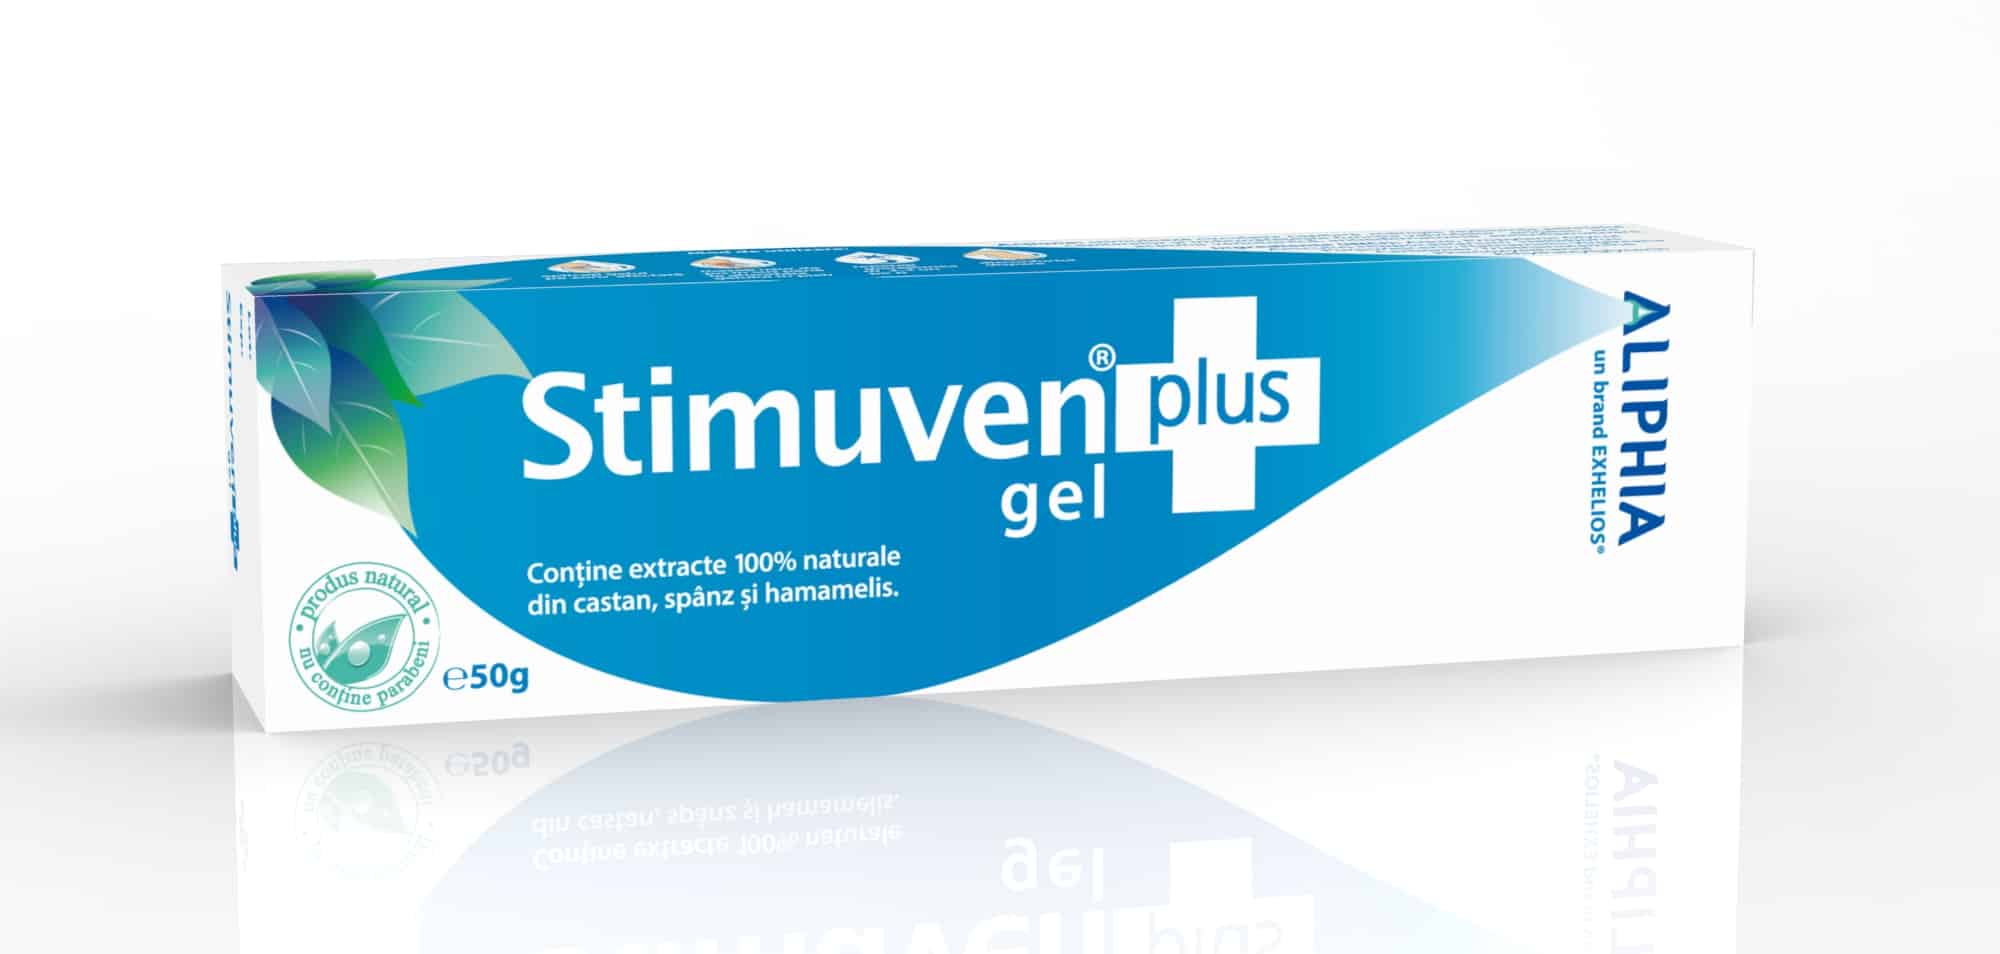 Afectiuni ale circulatiei - Stimuven Plus, Gel Aliphia pentru Varice, 60 G, Exhelios, farmacieieftina.ro